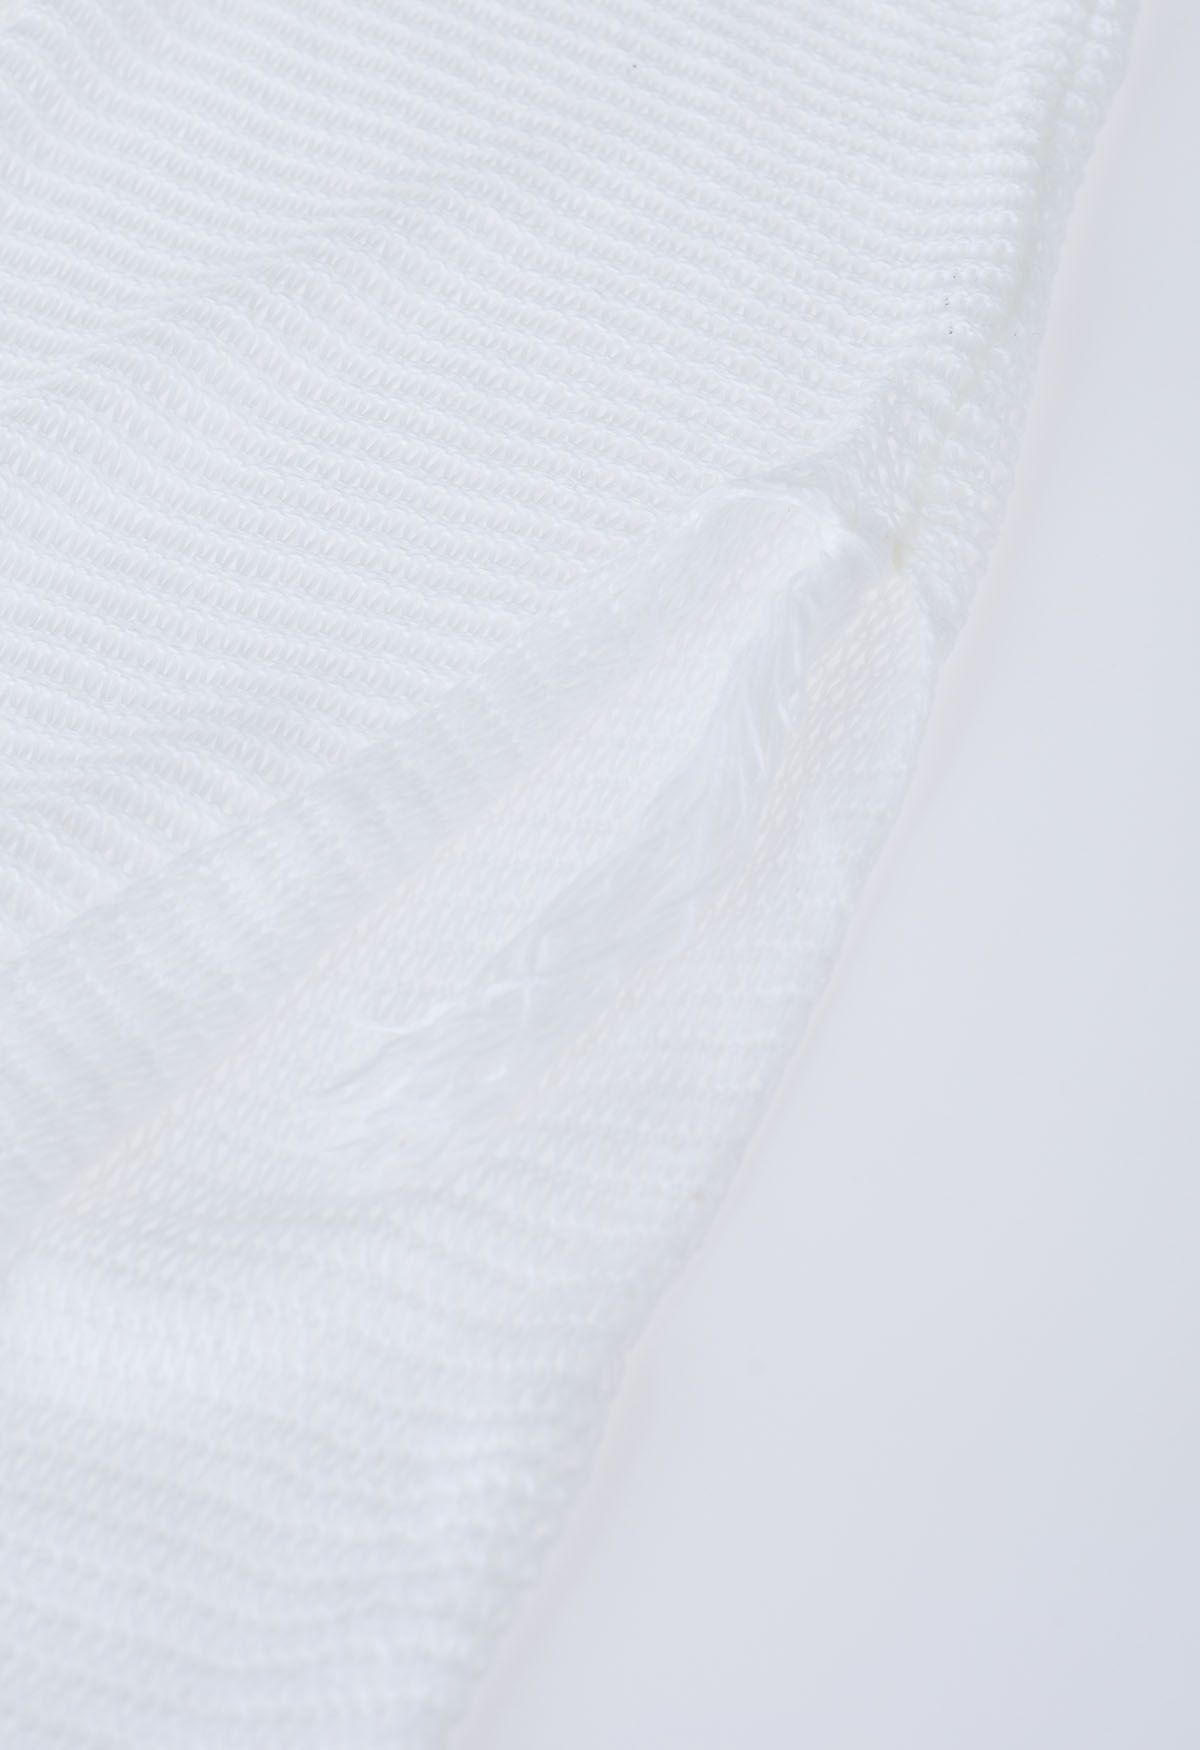 Couverture en tricot pointelle à ourlet frangé en blanc